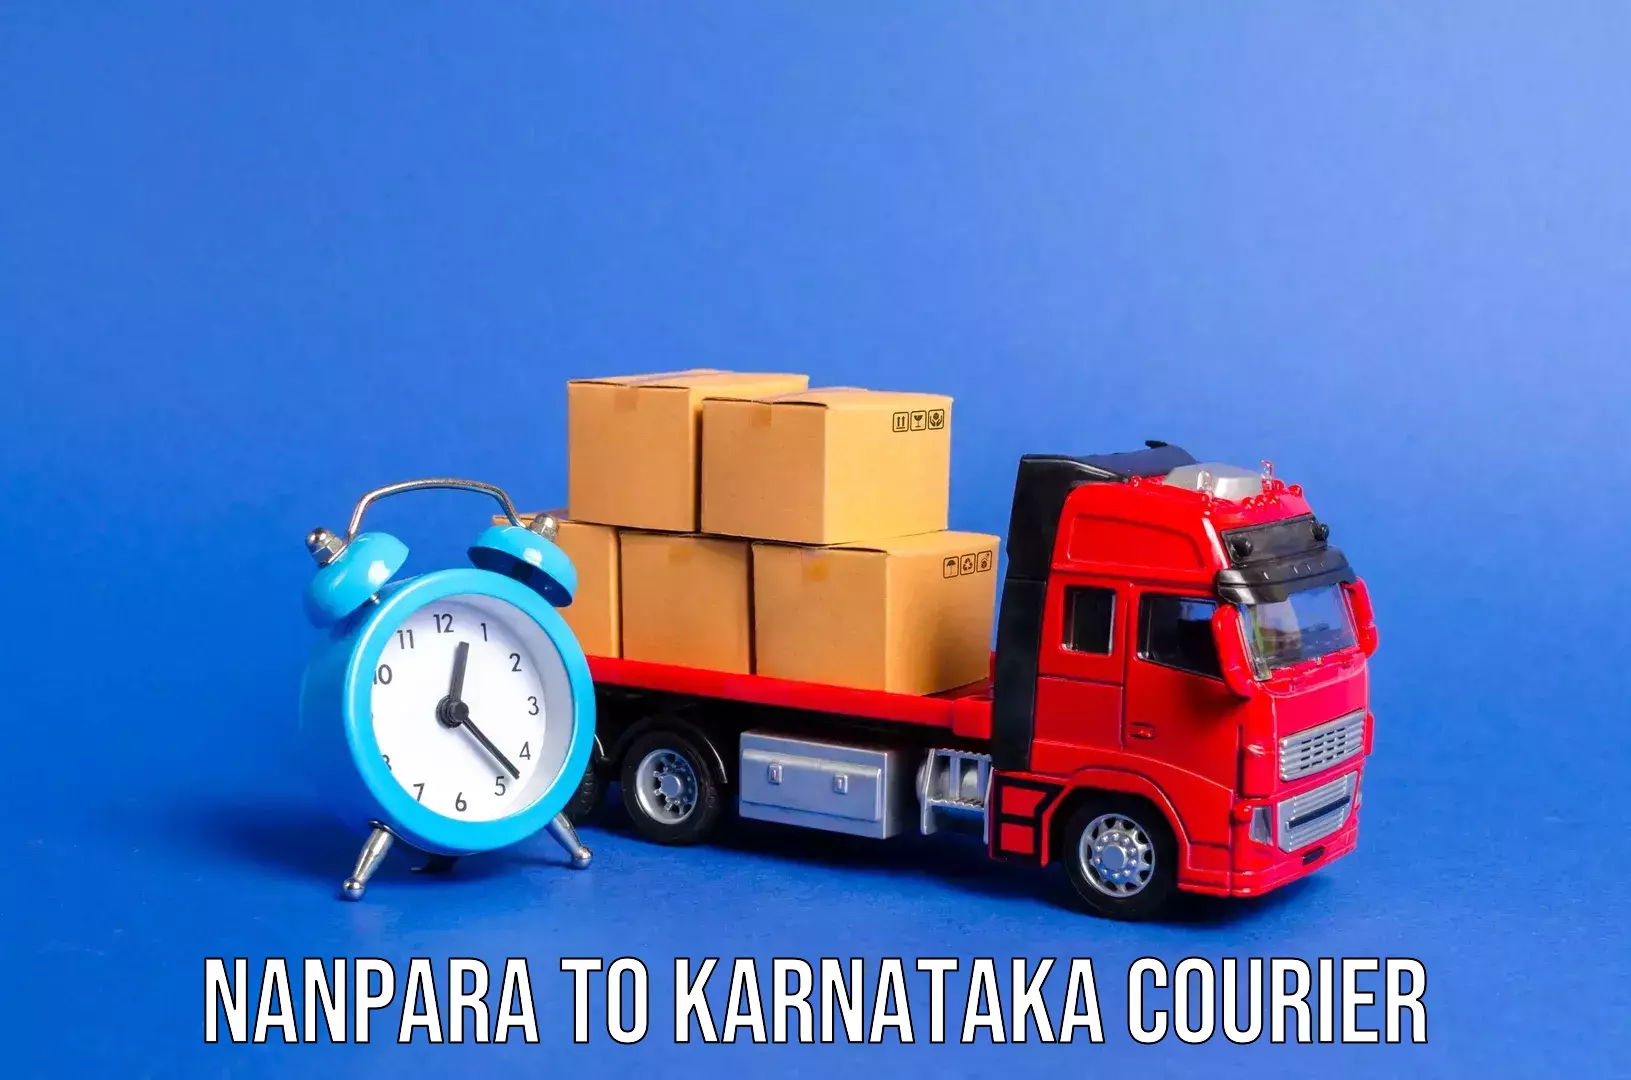 Regional luggage transport Nanpara to Karnataka